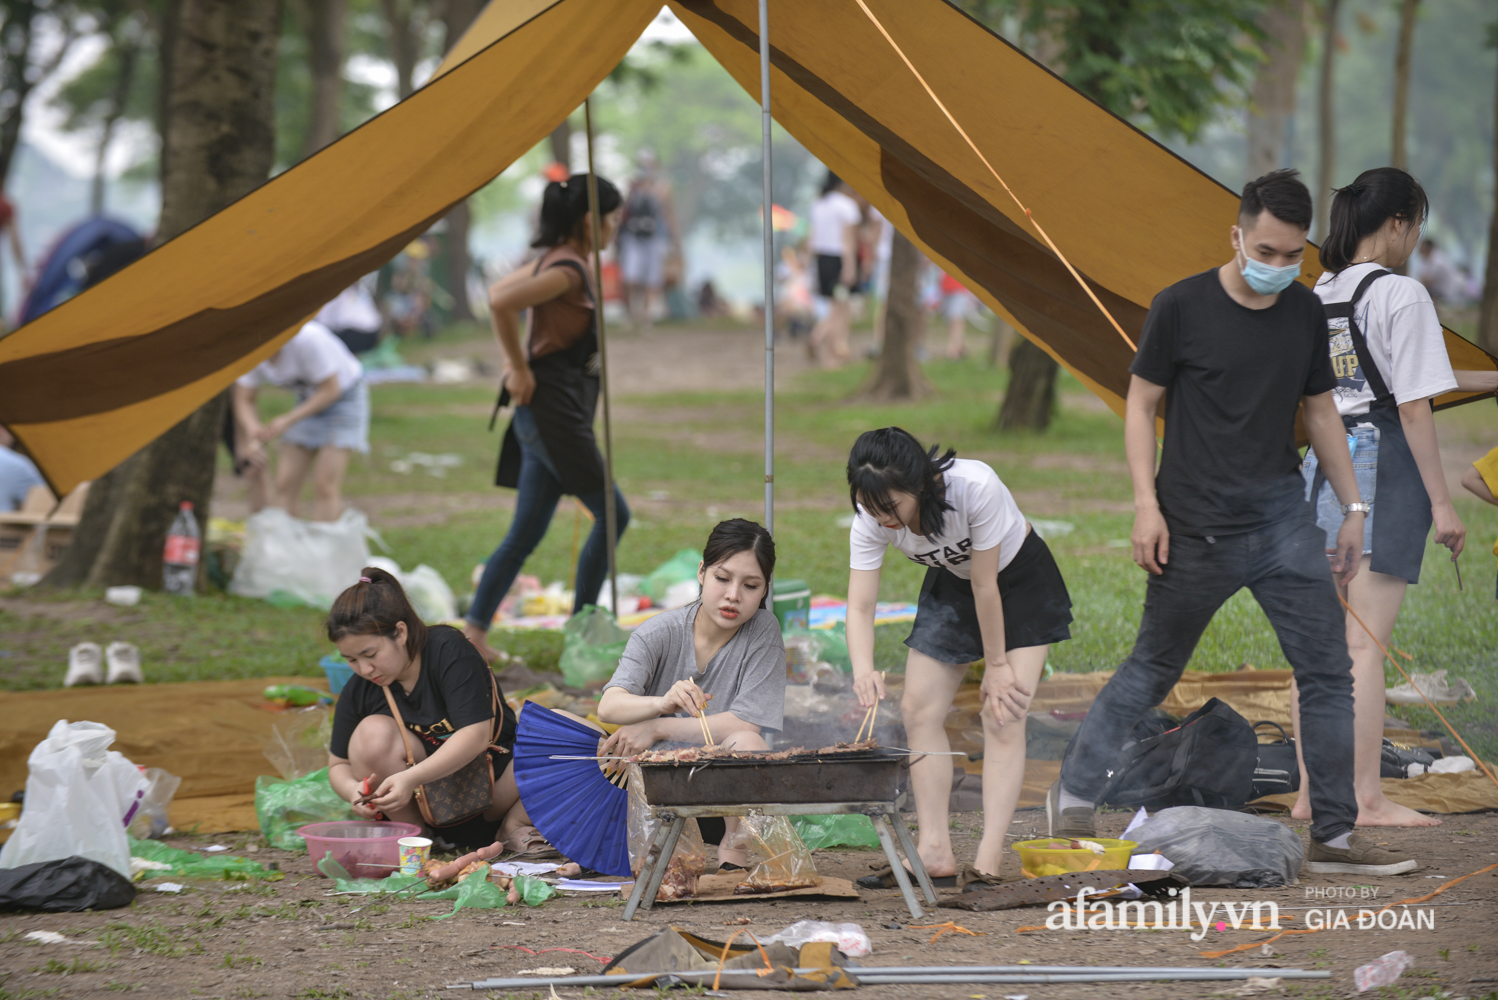 Công viên Yên Sở đông nghịt người cắm trại, vui chơi ngày nghỉ lễ - Ảnh 4.